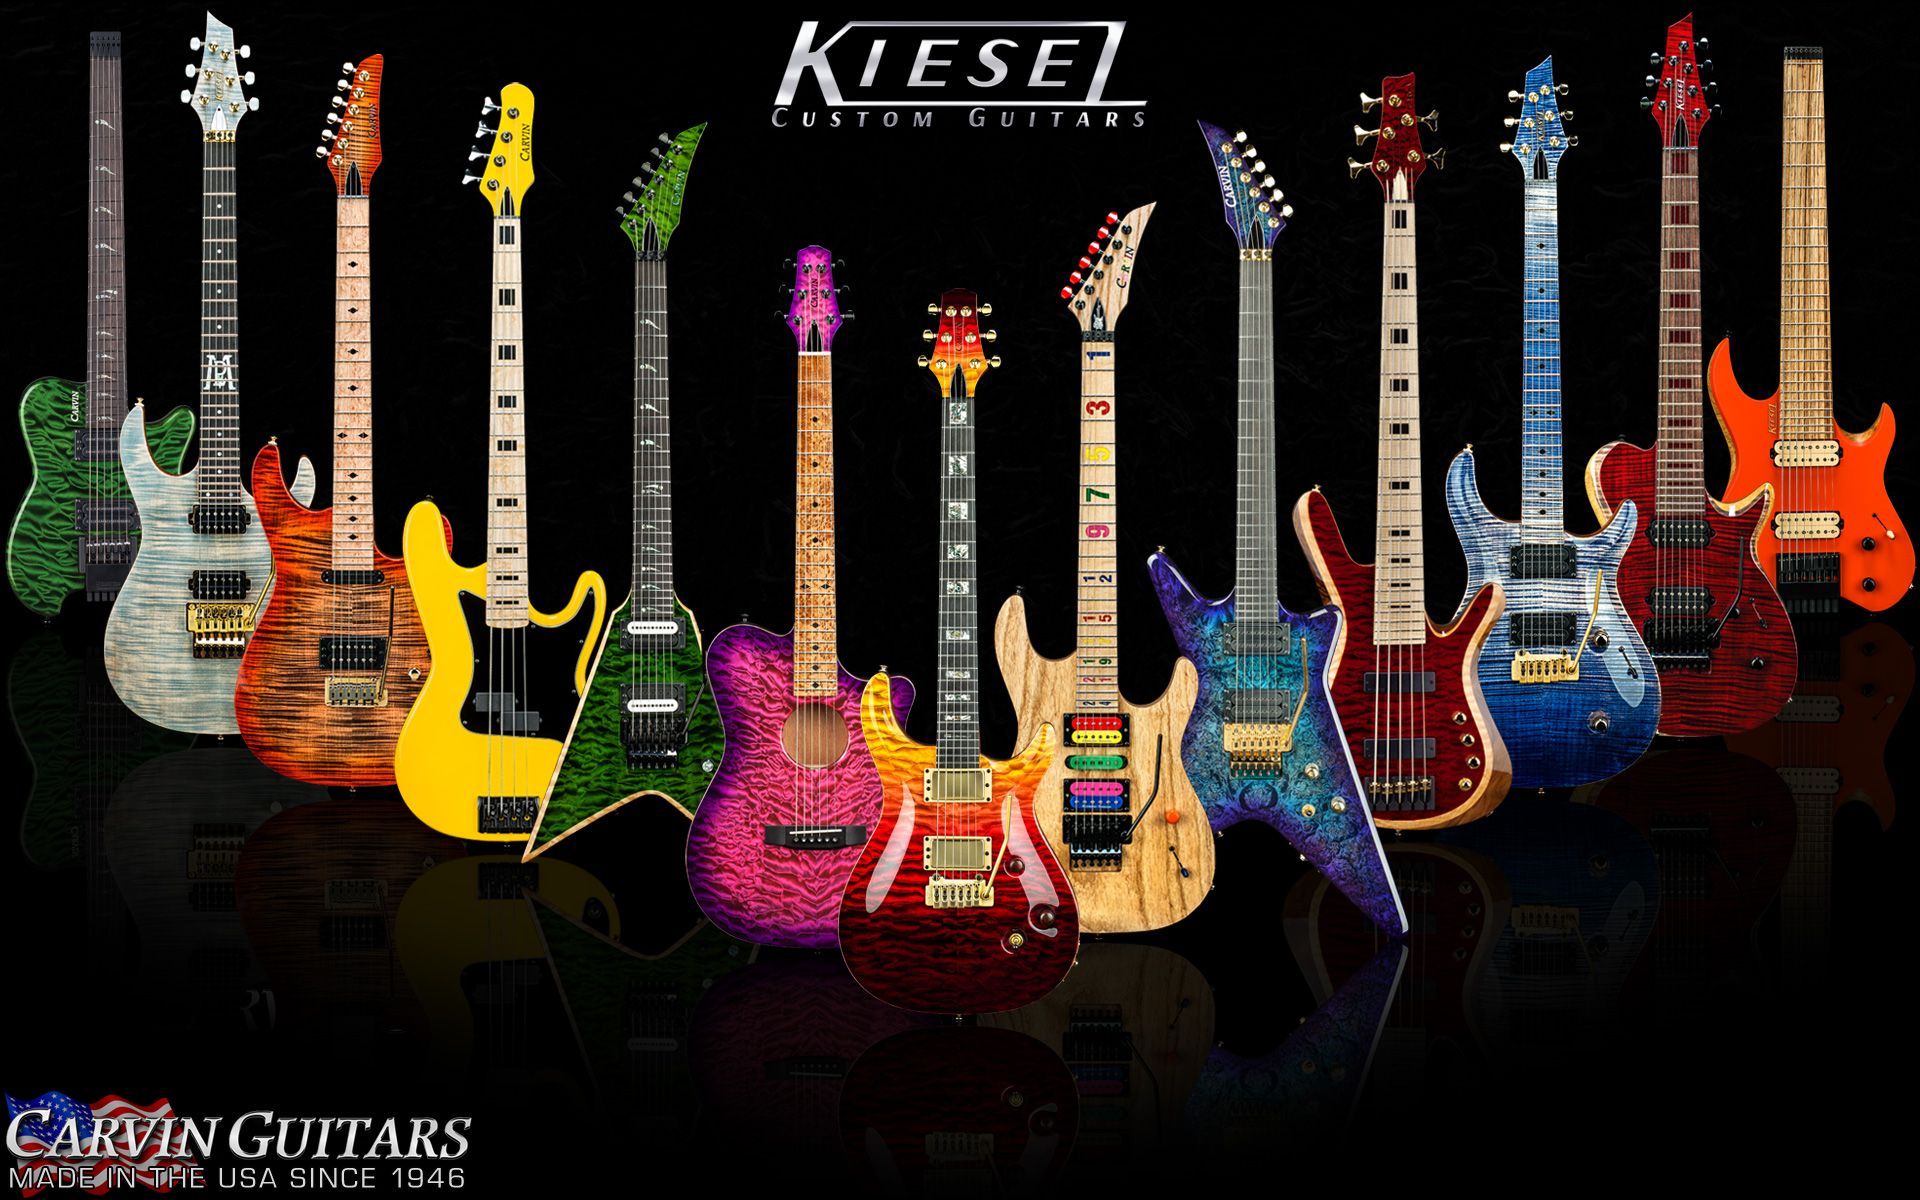 Fondos de guitarra y bajo personalizados | KieselGuitars.com